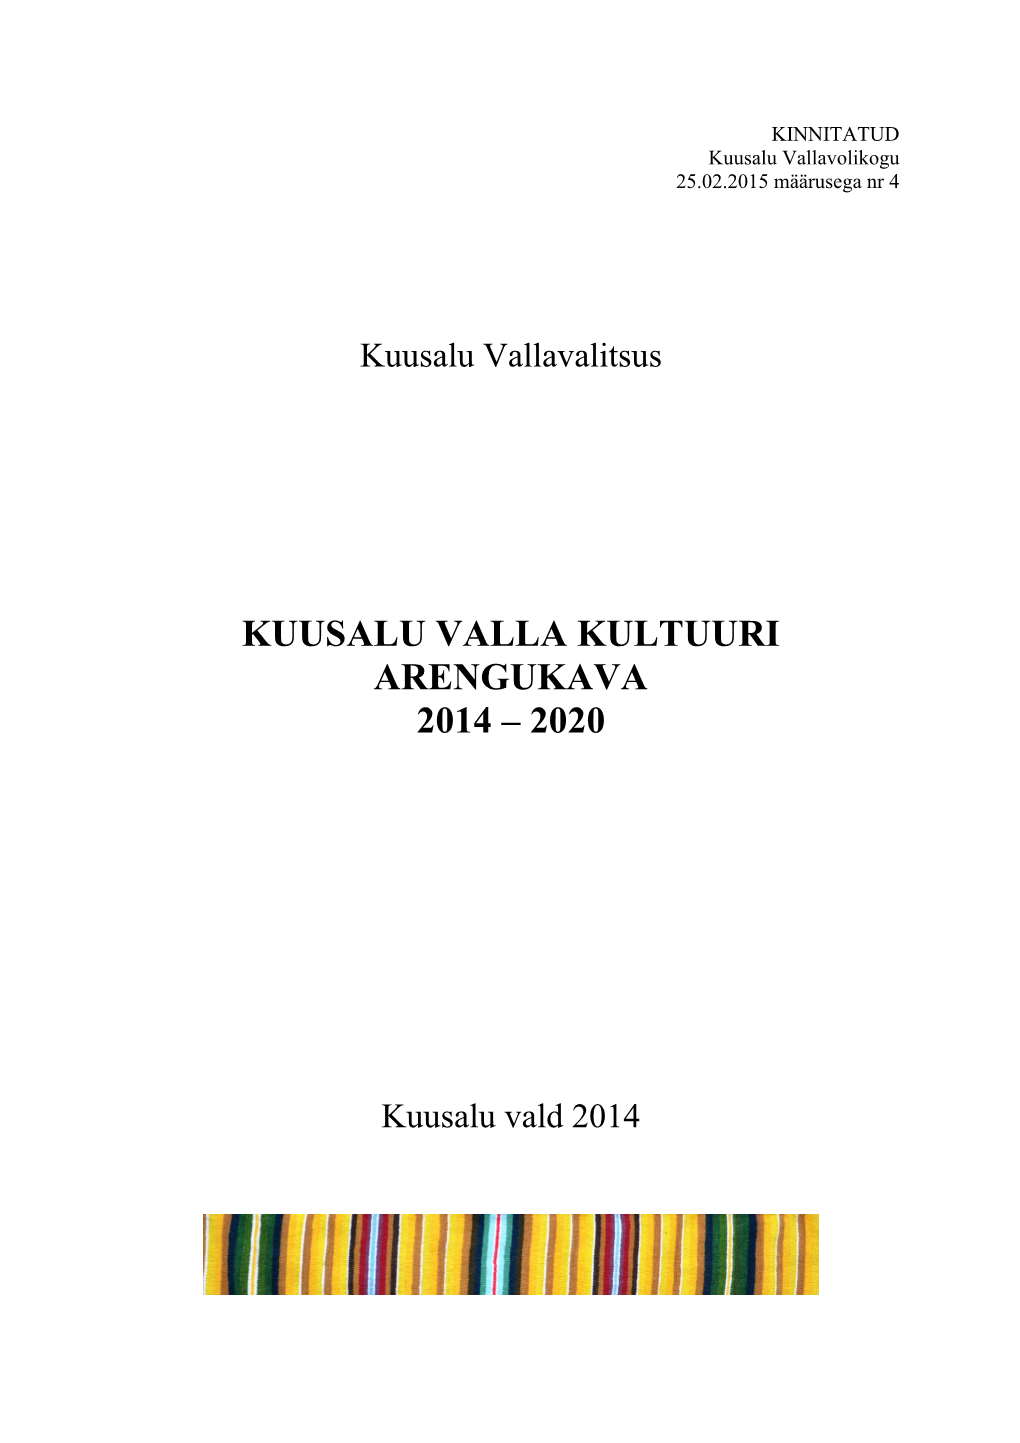 Kuusalu Valla Kultuuri Arengukava 2014 – 2020